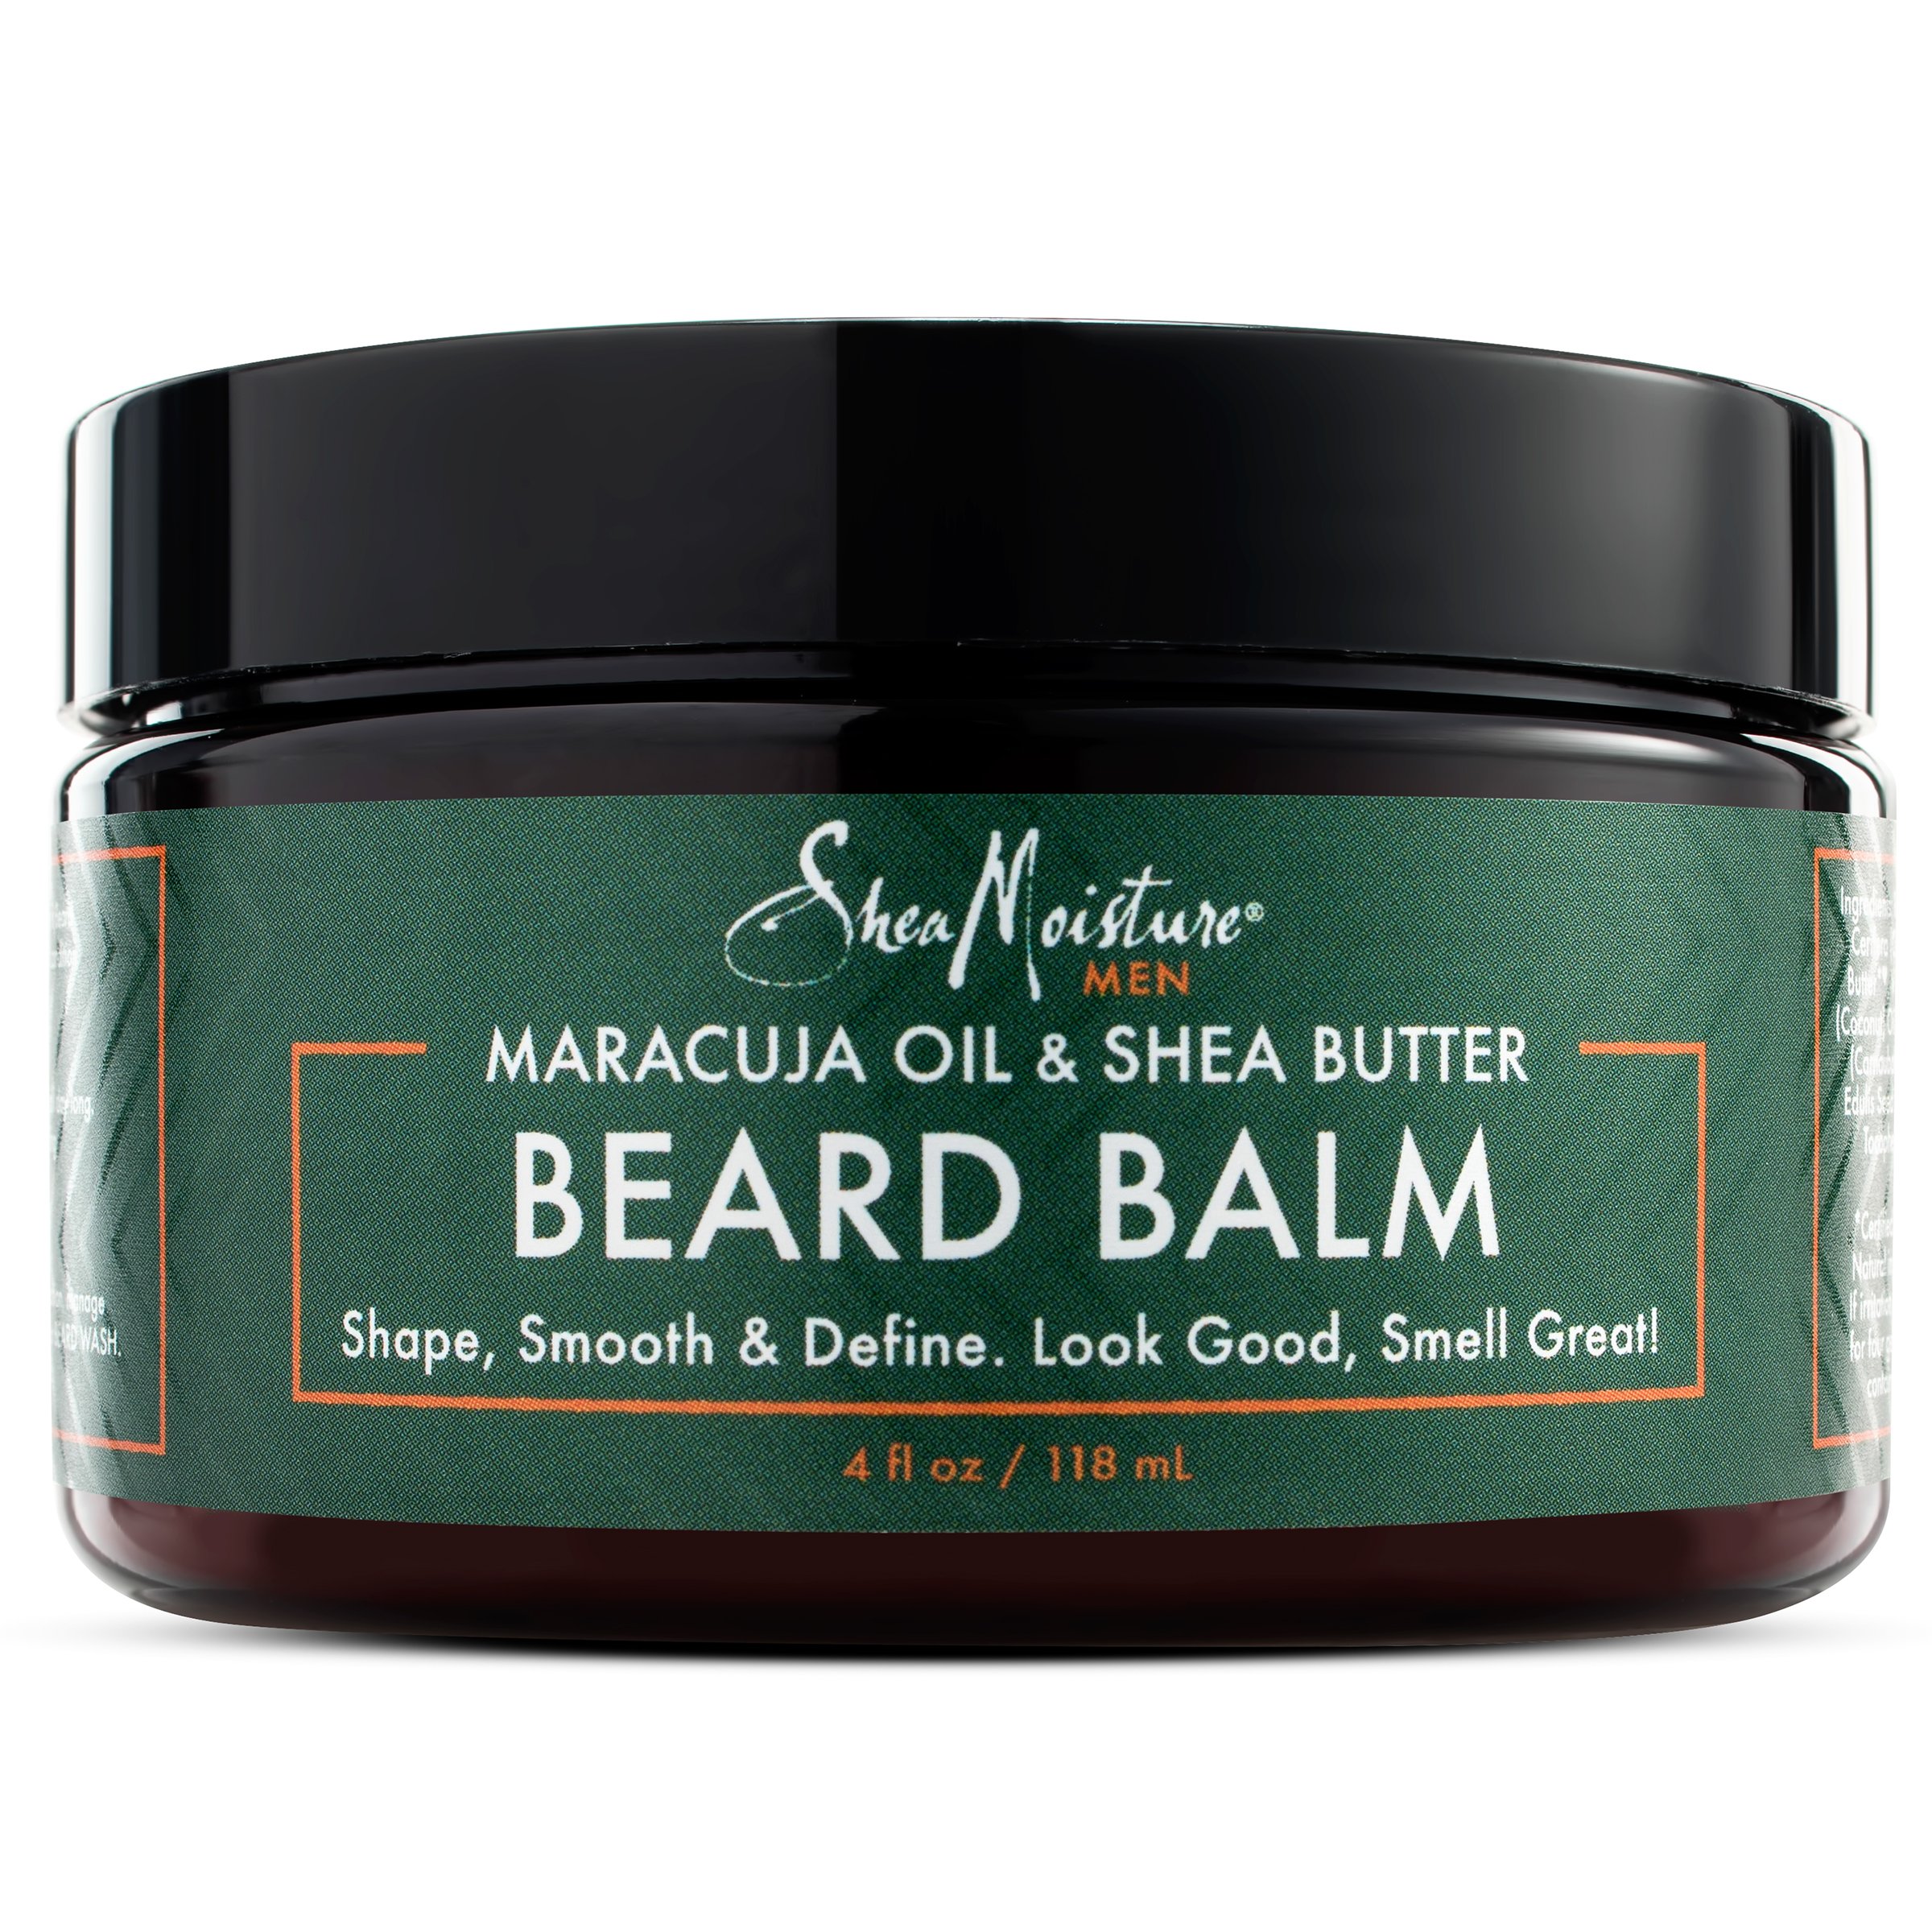 SHEA MOISTURE: Maracuja Oil & Shea Butter Beard Balm 4 oz